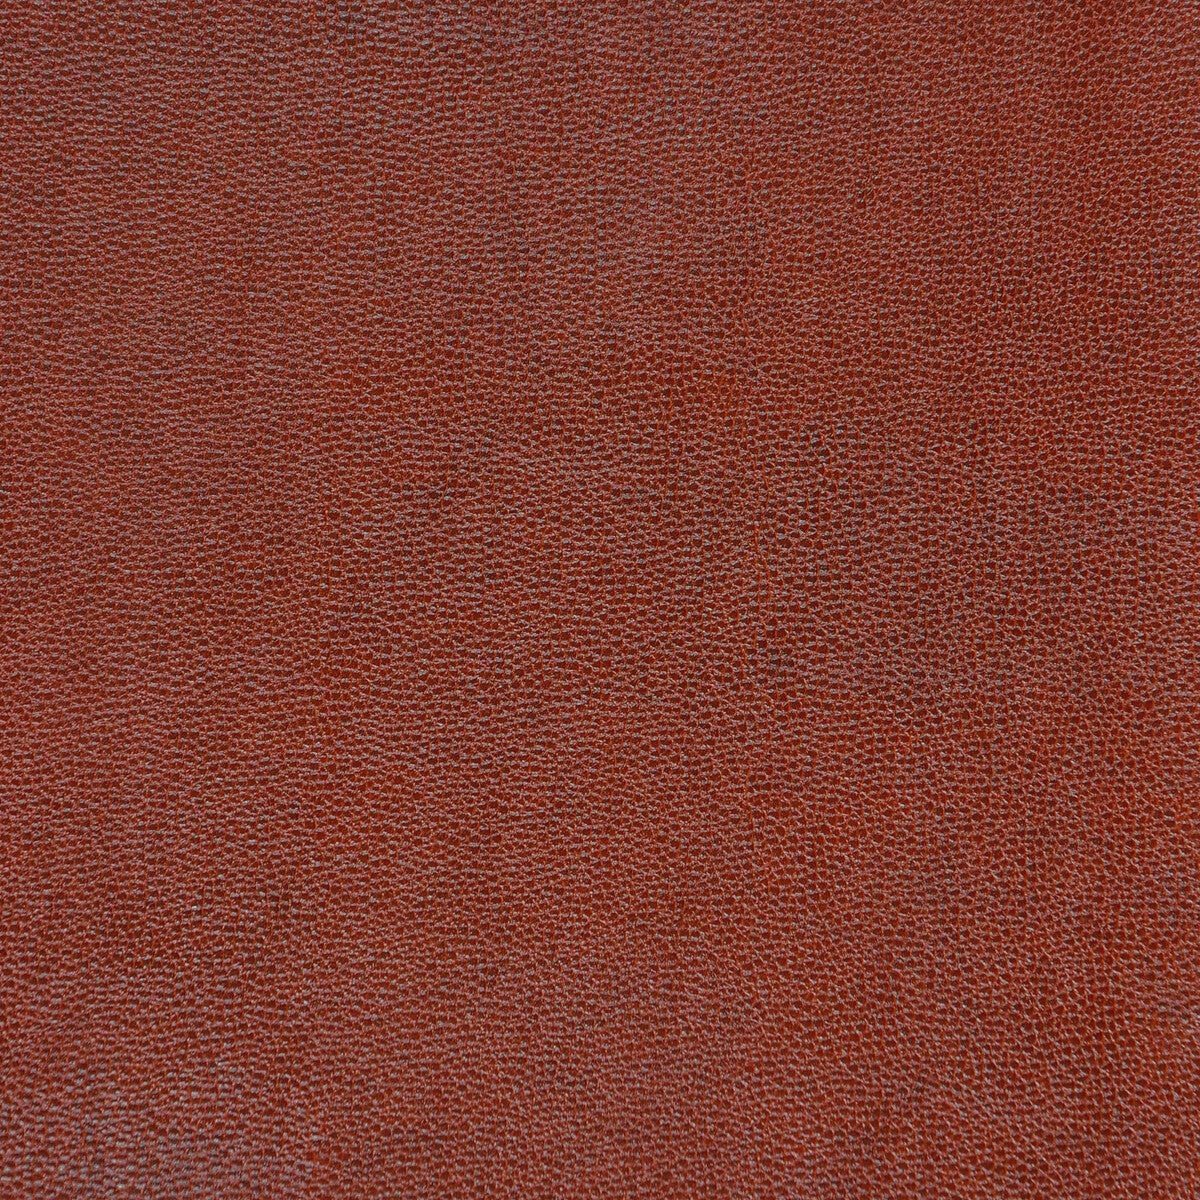 Kravet Design fabric in sparta-624 color - pattern SPARTA.624.0 - by Kravet Design